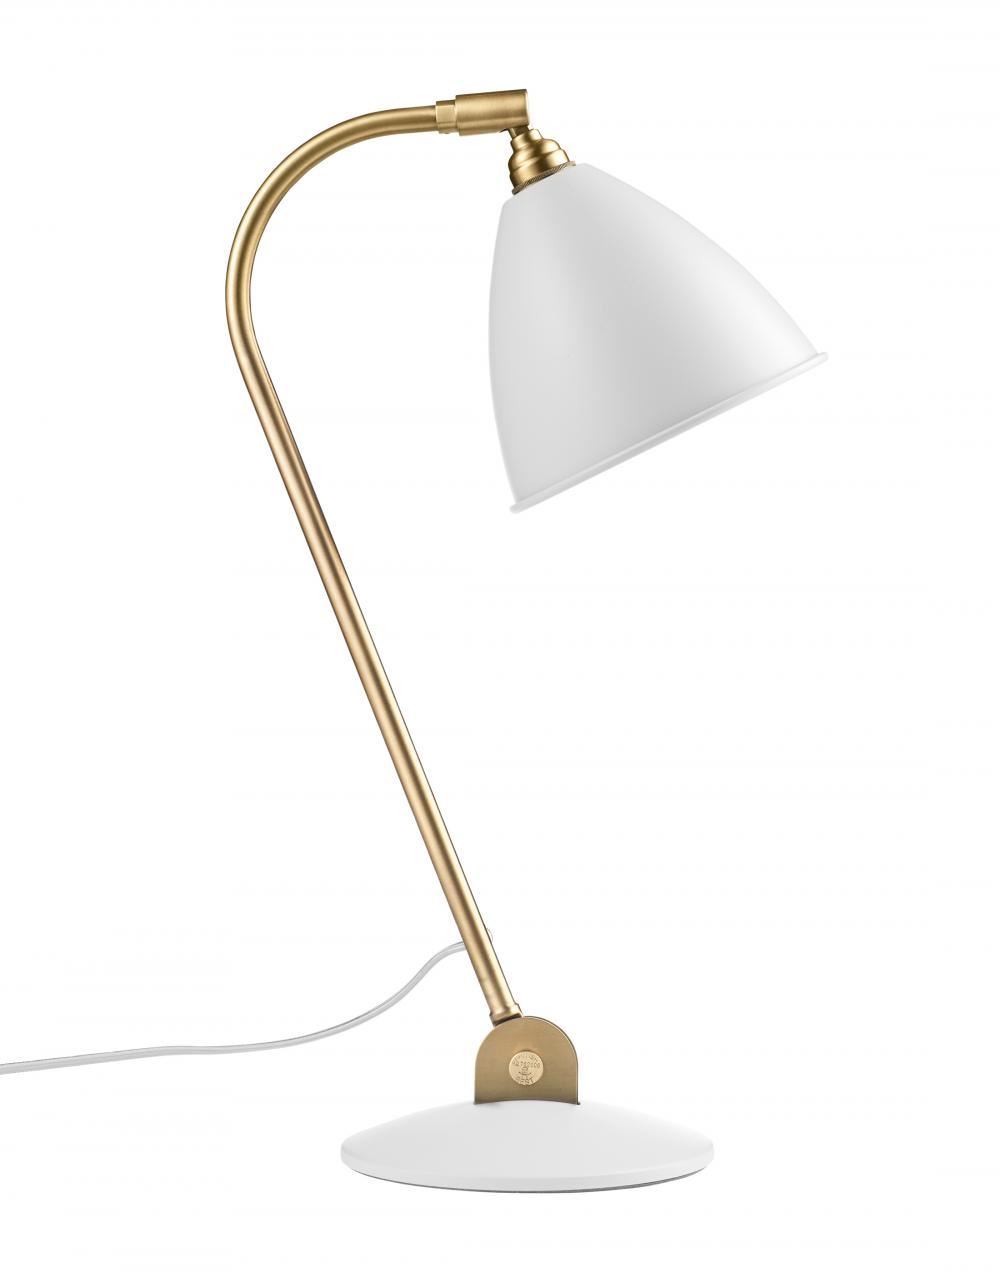 Bestlite Bl2 Table Lamp Brass White